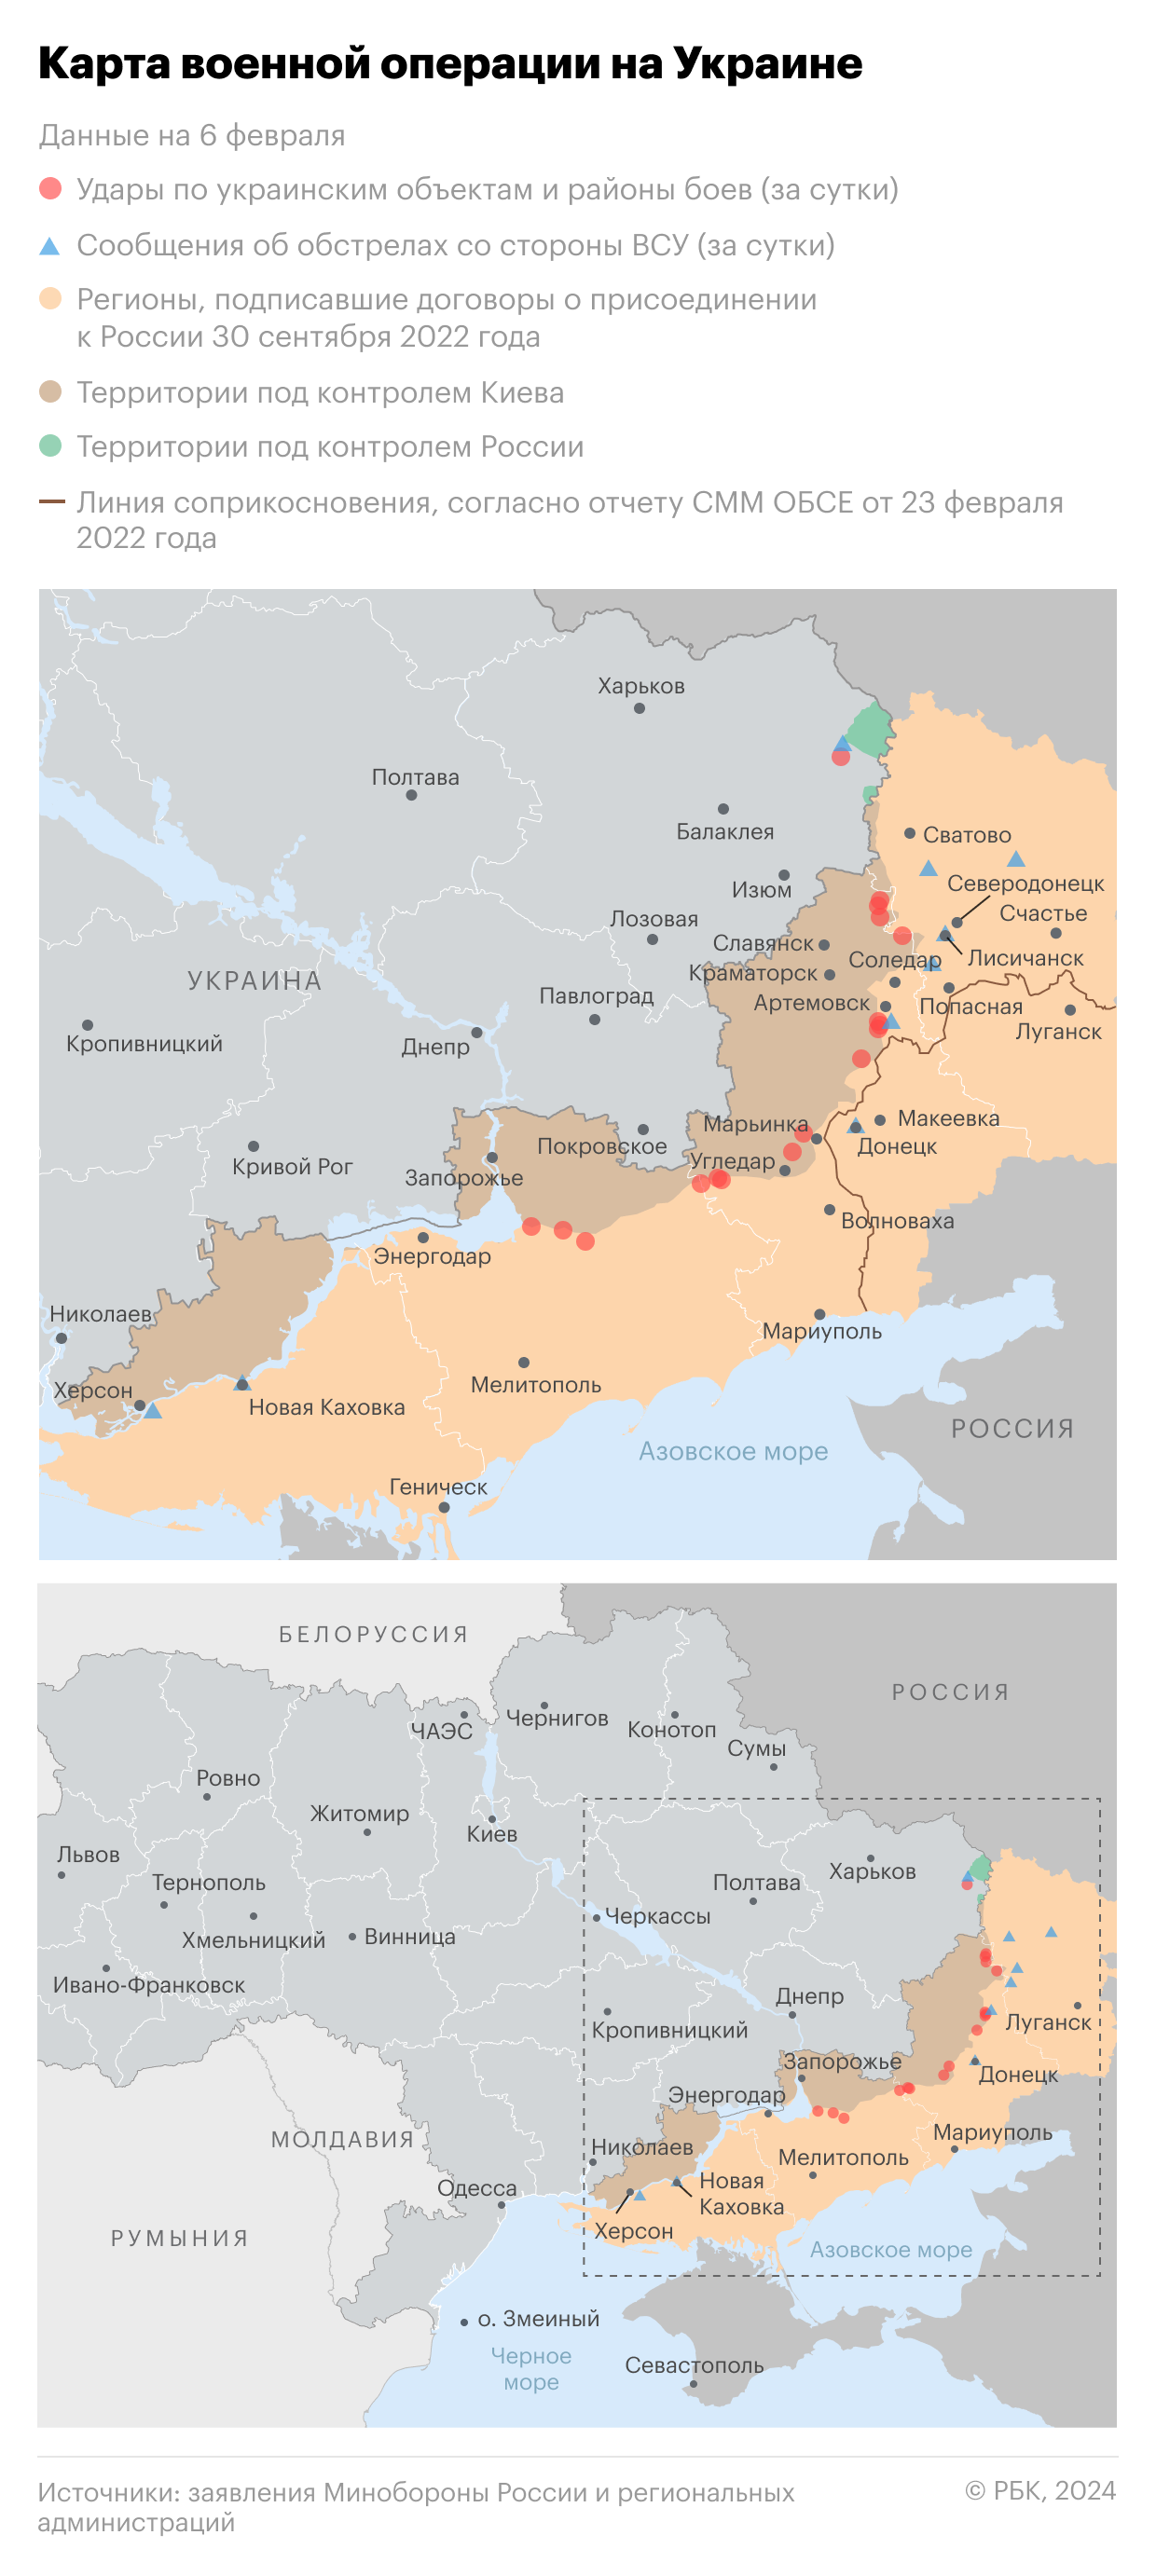 Военная операция на Украине. Карта на 6 февраля